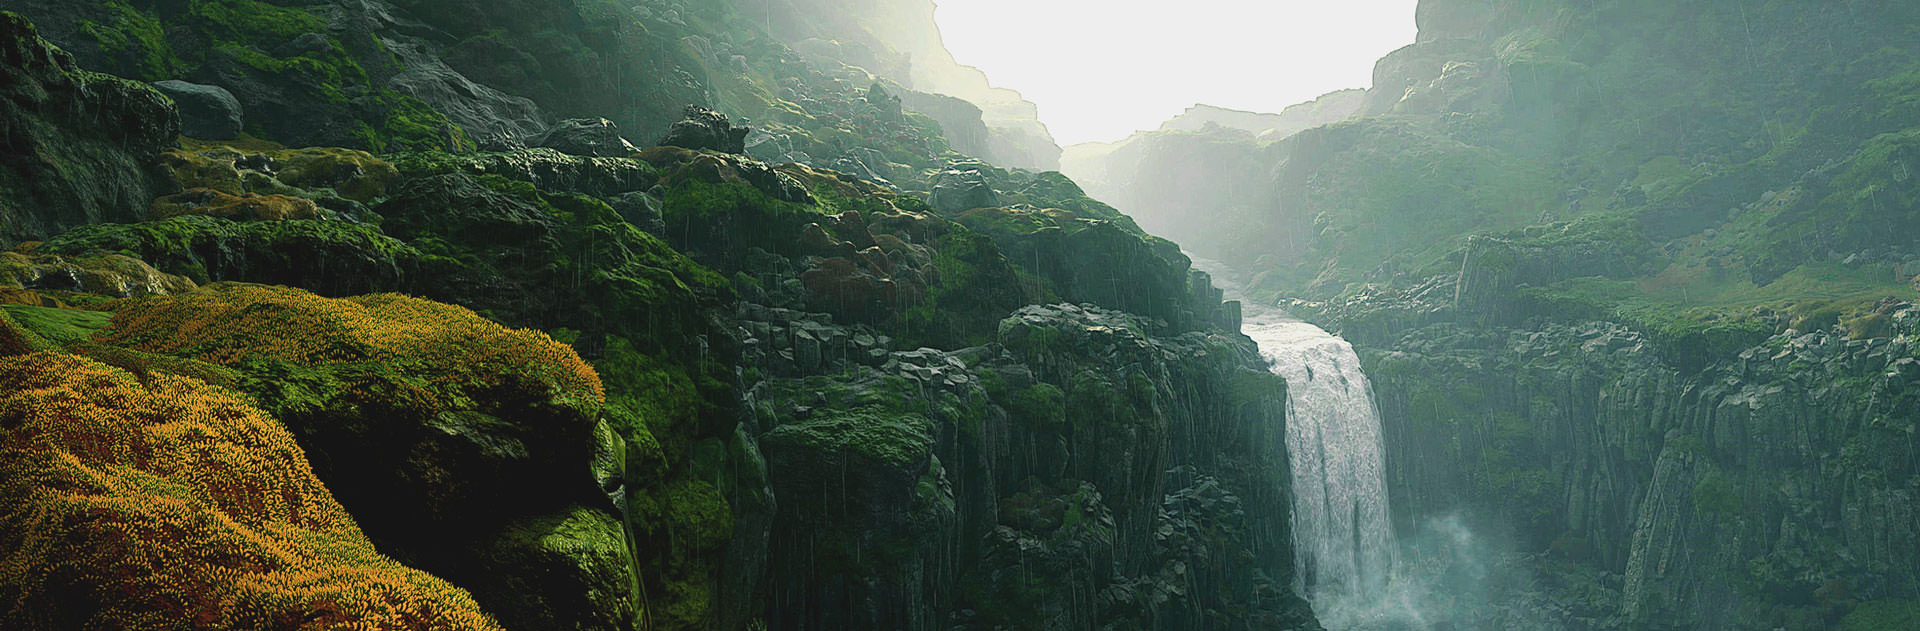 مناظر طبیعی و بسیار باورپذیر بازی Death Stranding هیدئو کوجیما با نمایش یک آبشار